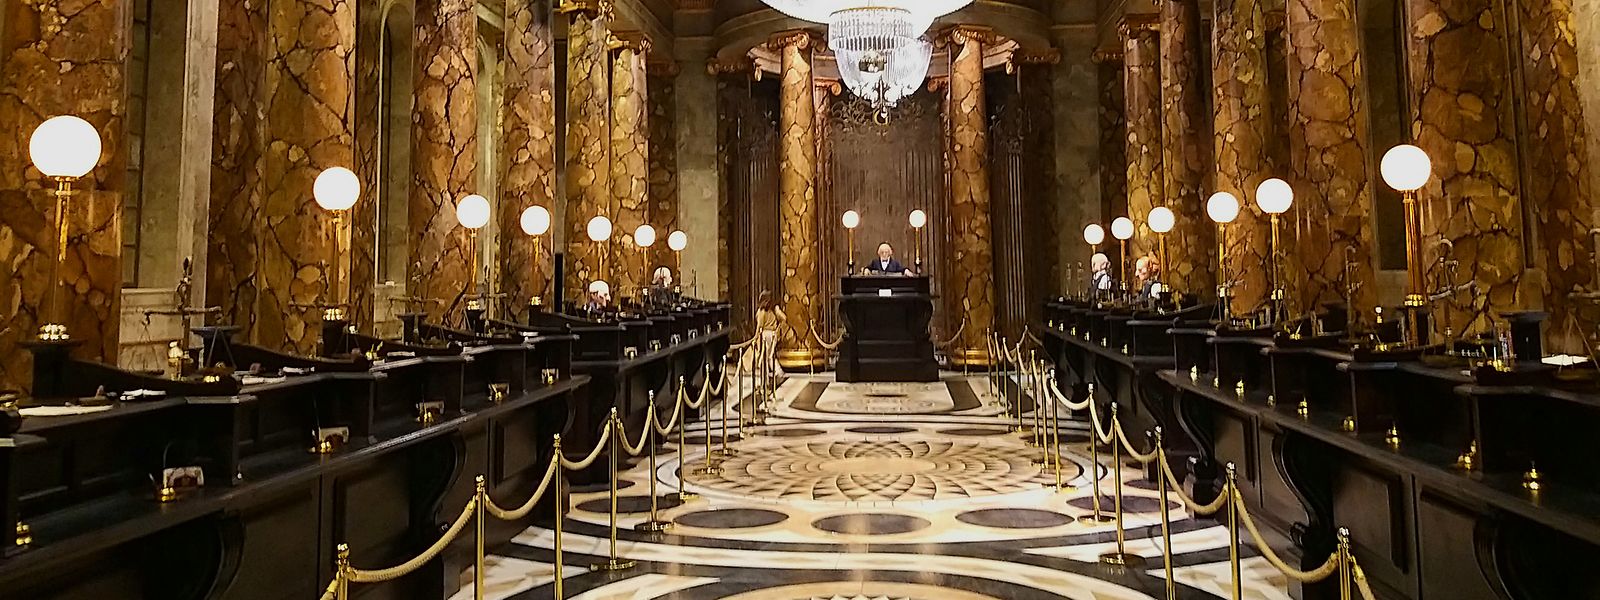 Die pompöse Halle der Zaubererbank fasziniert die Zuschauer mit ihrem Glanz und den vielen Details.